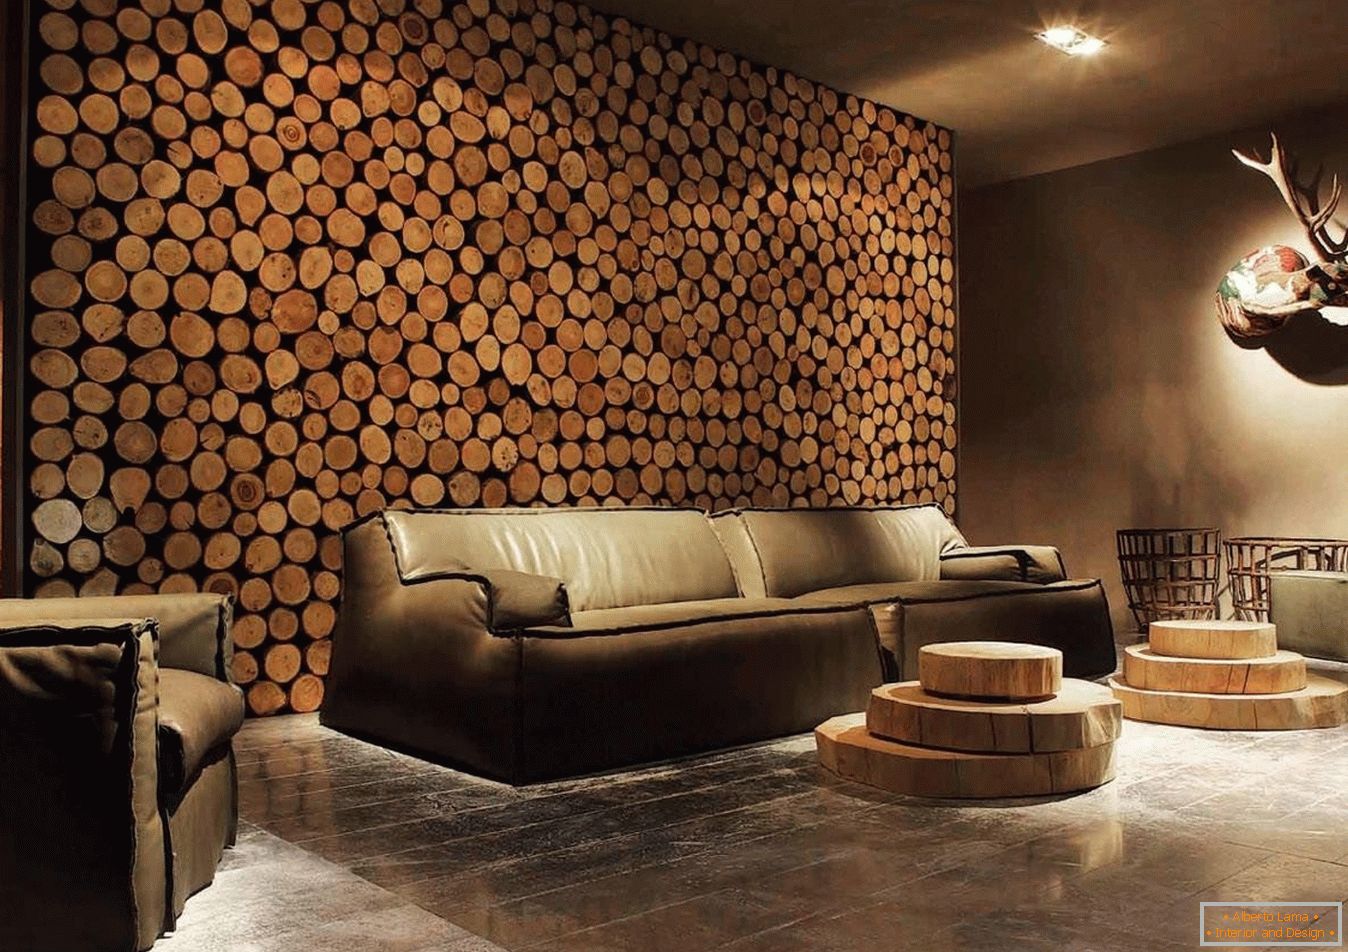 Spilas en bois de bois comme décoration des murs du salon